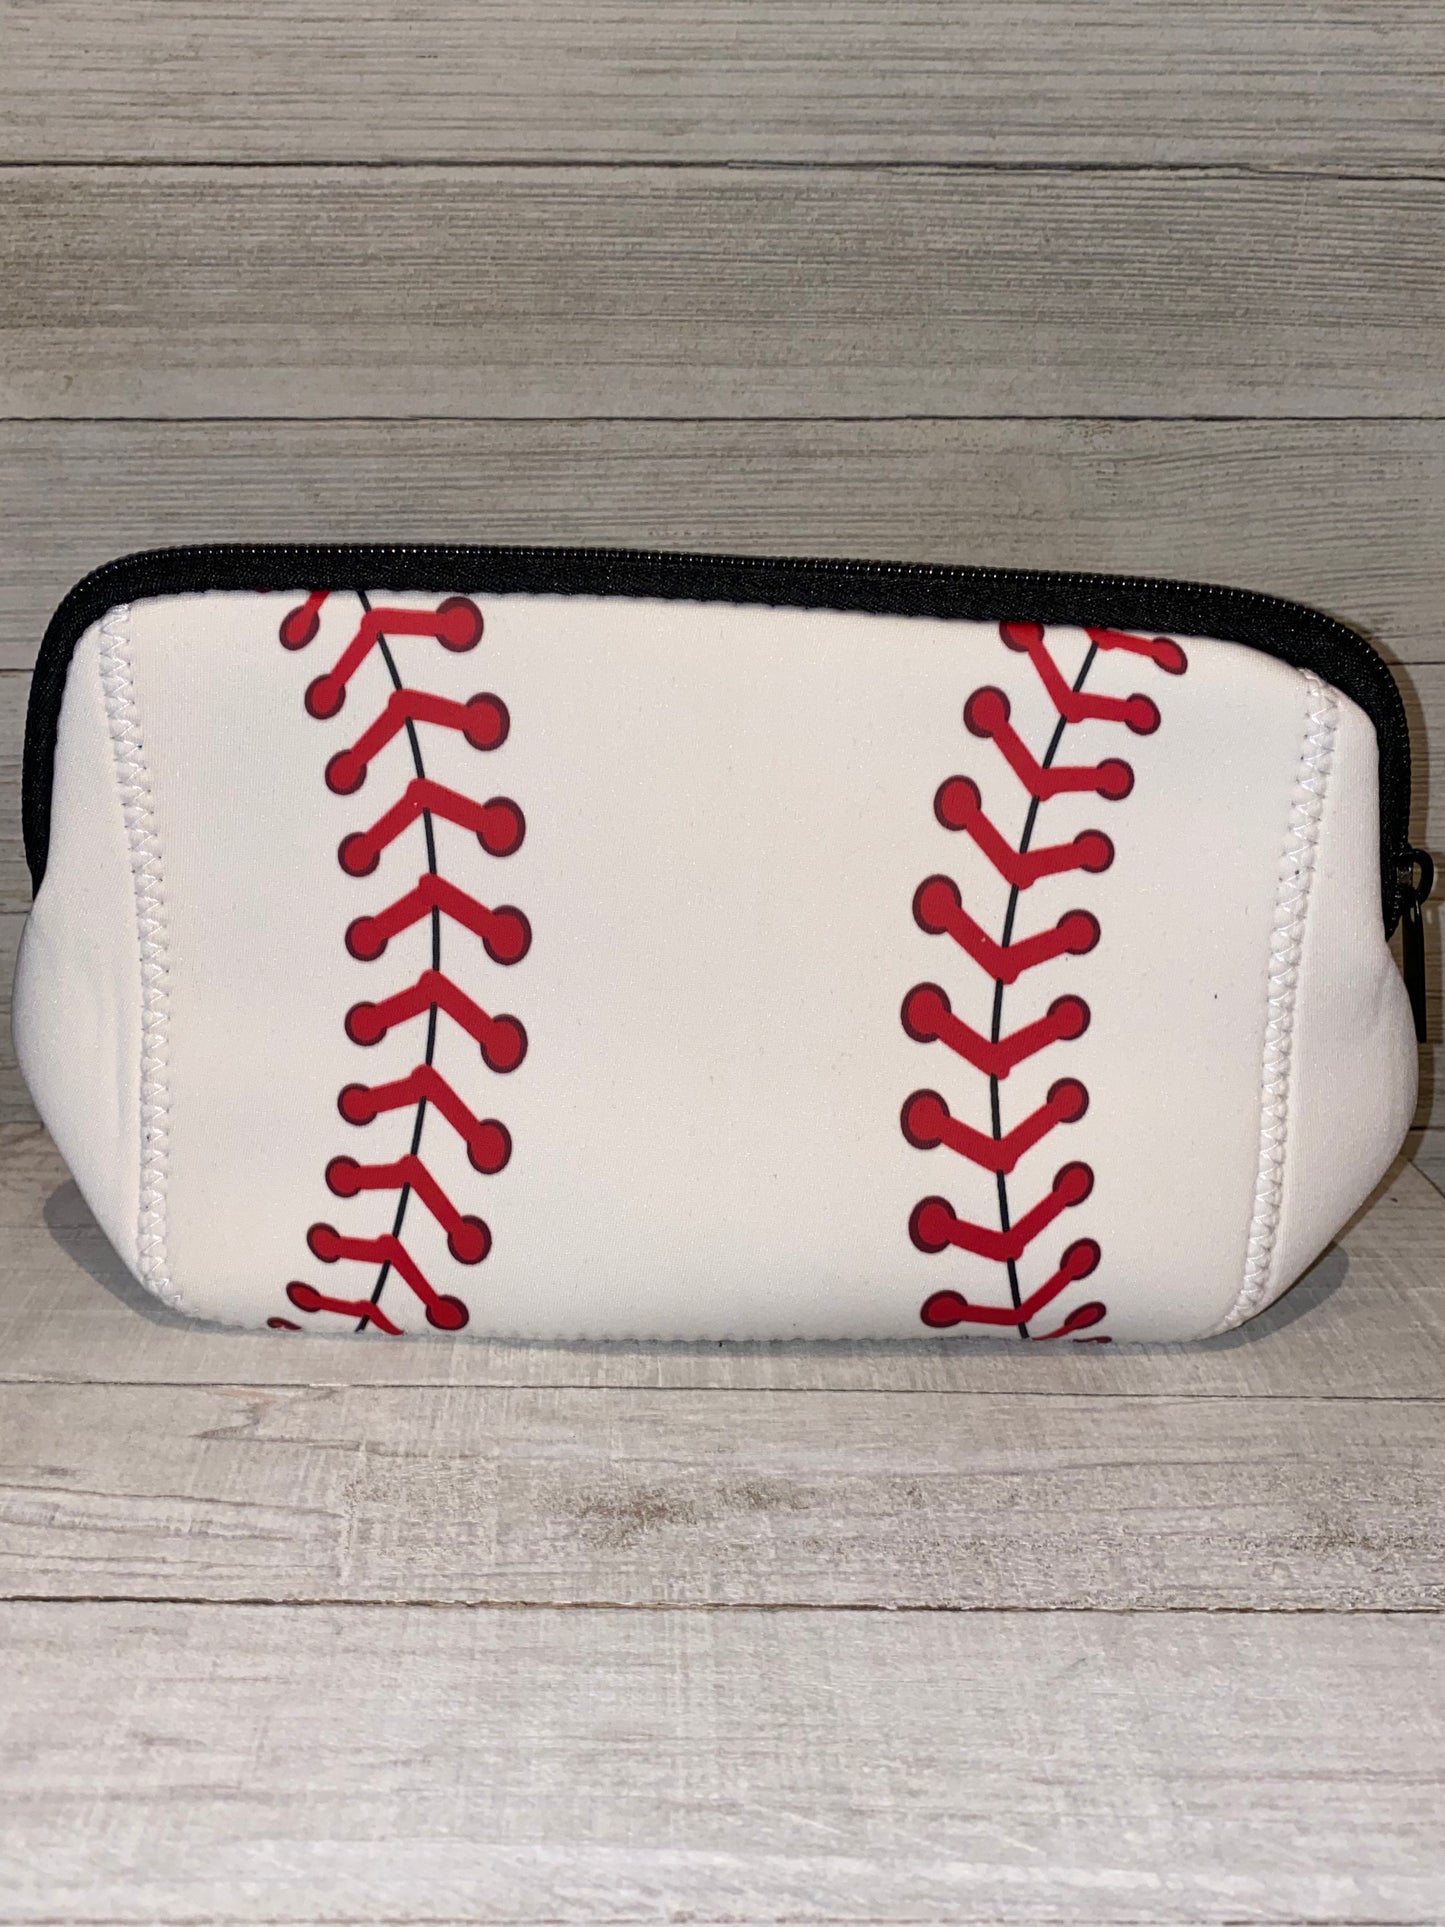 Sport cosmetic bag, baseball, football, softball, basketball. PERSONALIZED gift makeup bag